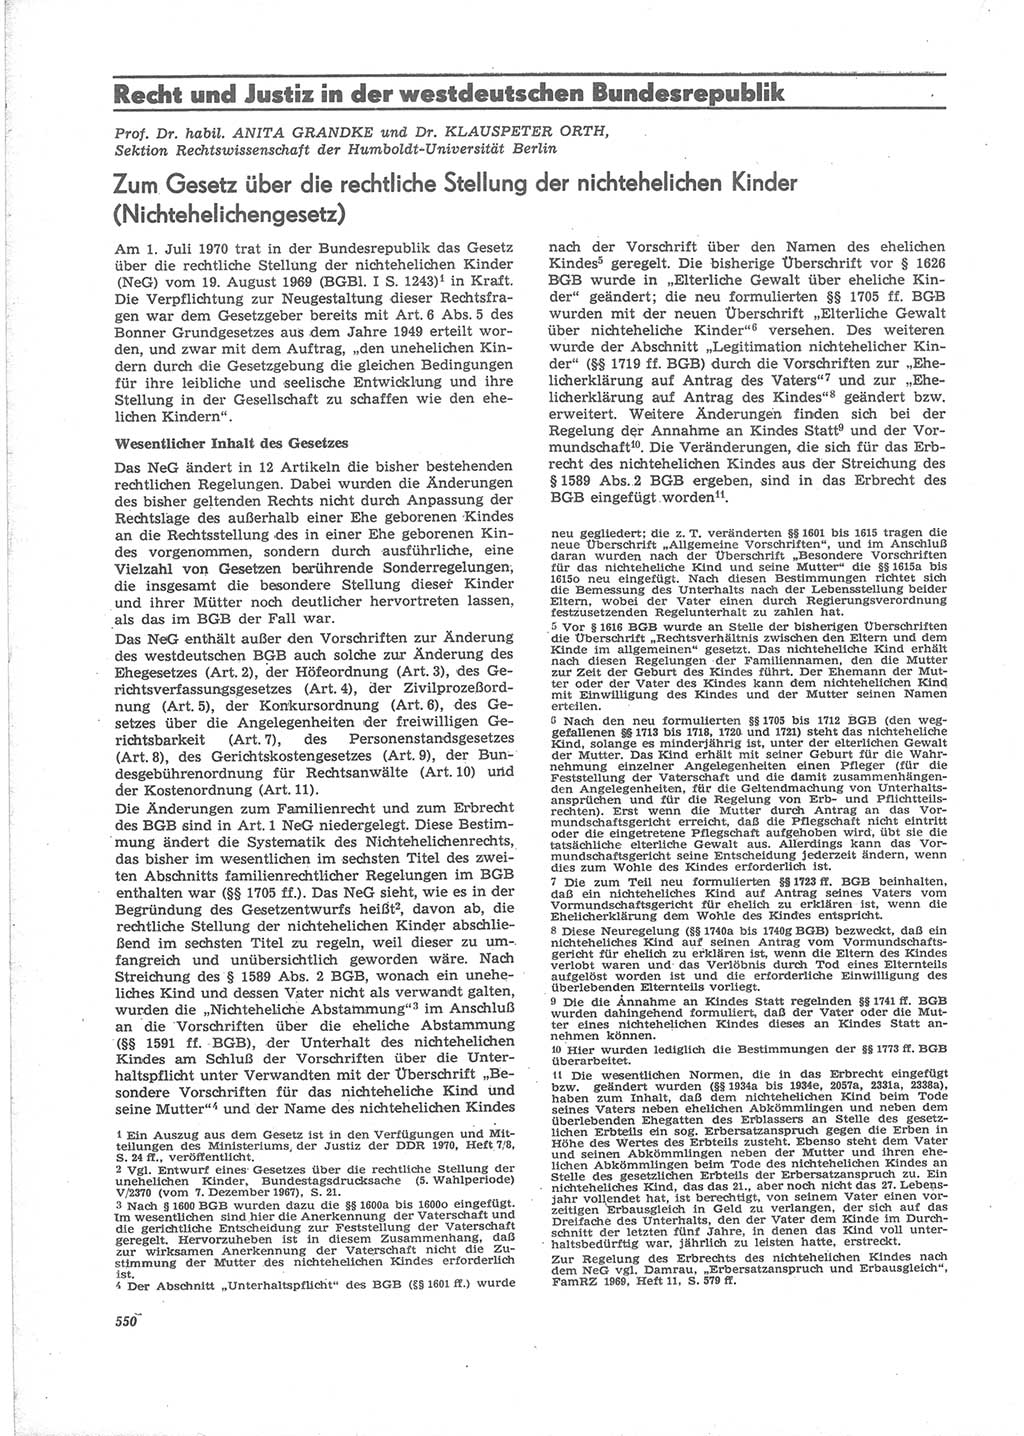 Neue Justiz (NJ), Zeitschrift für Recht und Rechtswissenschaft [Deutsche Demokratische Republik (DDR)], 24. Jahrgang 1970, Seite 550 (NJ DDR 1970, S. 550)